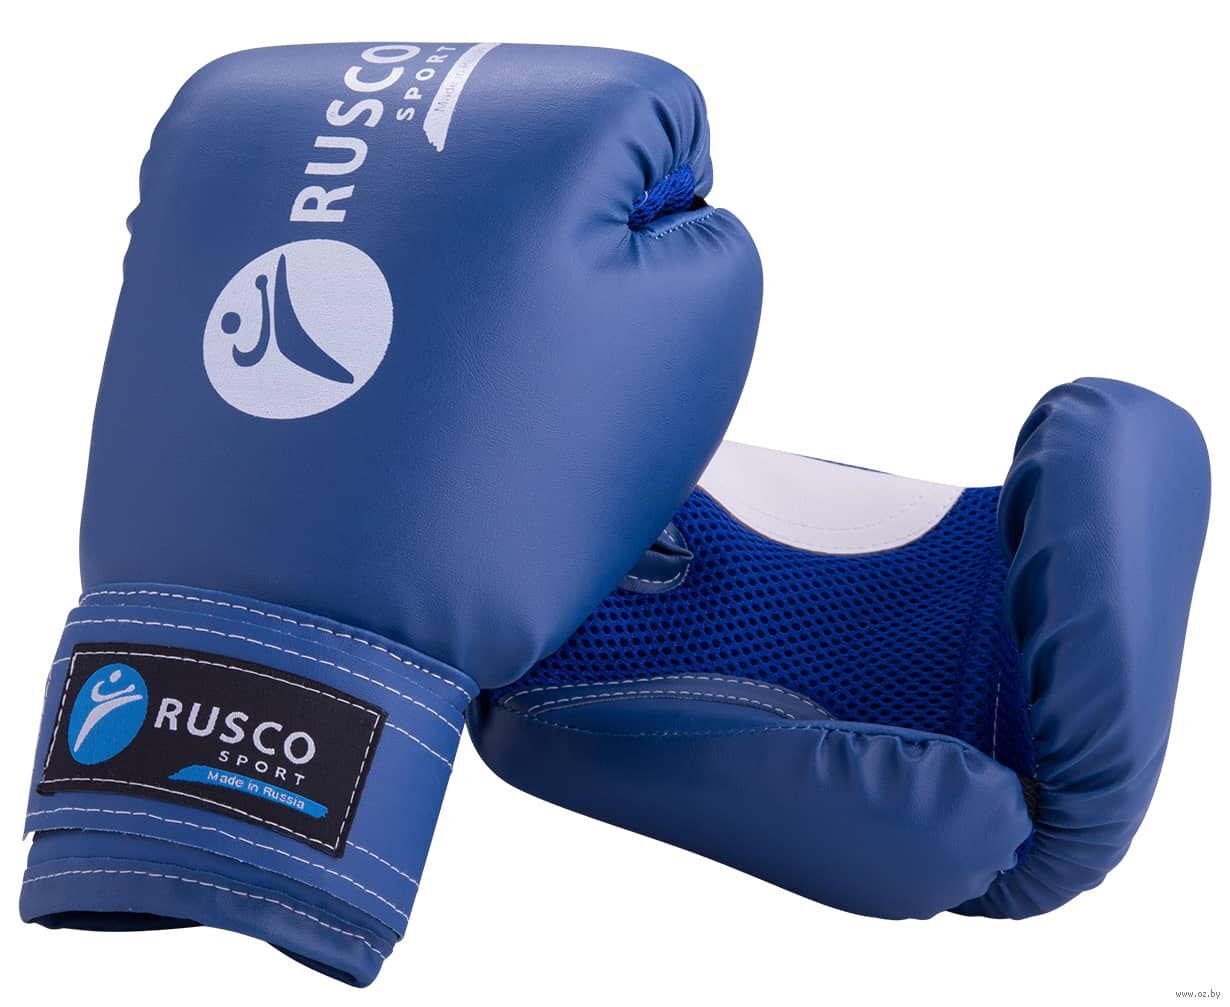 Боксерские перчатки спортмастер. Боксерские перчатки Rusco Sport. Перчатки Rusco 10 oz. Rusco Sport перчатки 10 унций. Перчатки боксерские Rage 10 УНС синие.